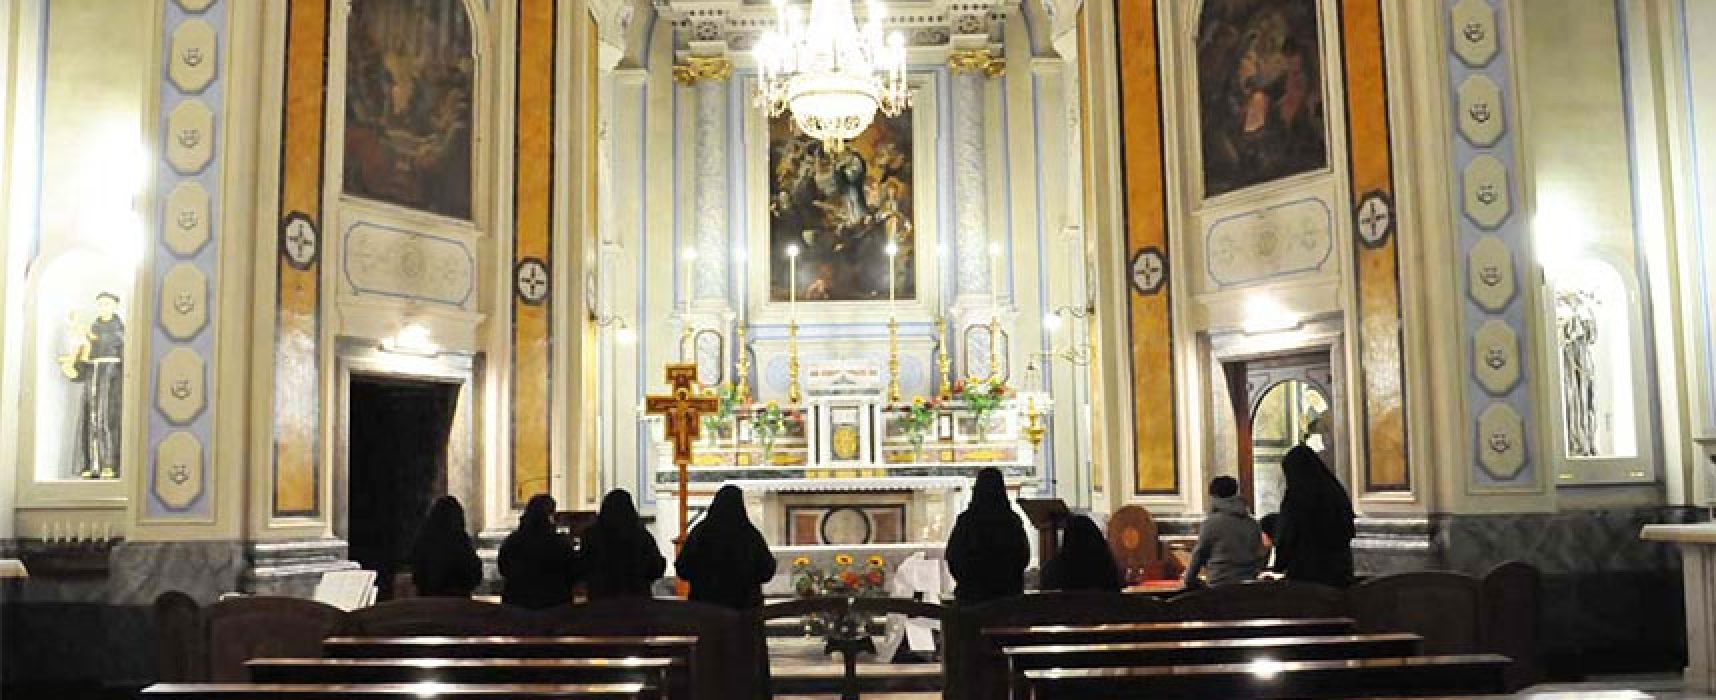 Celebrazione 500 anni Monastero san Luigi accoglie reliquia sant’Antonio da Padova